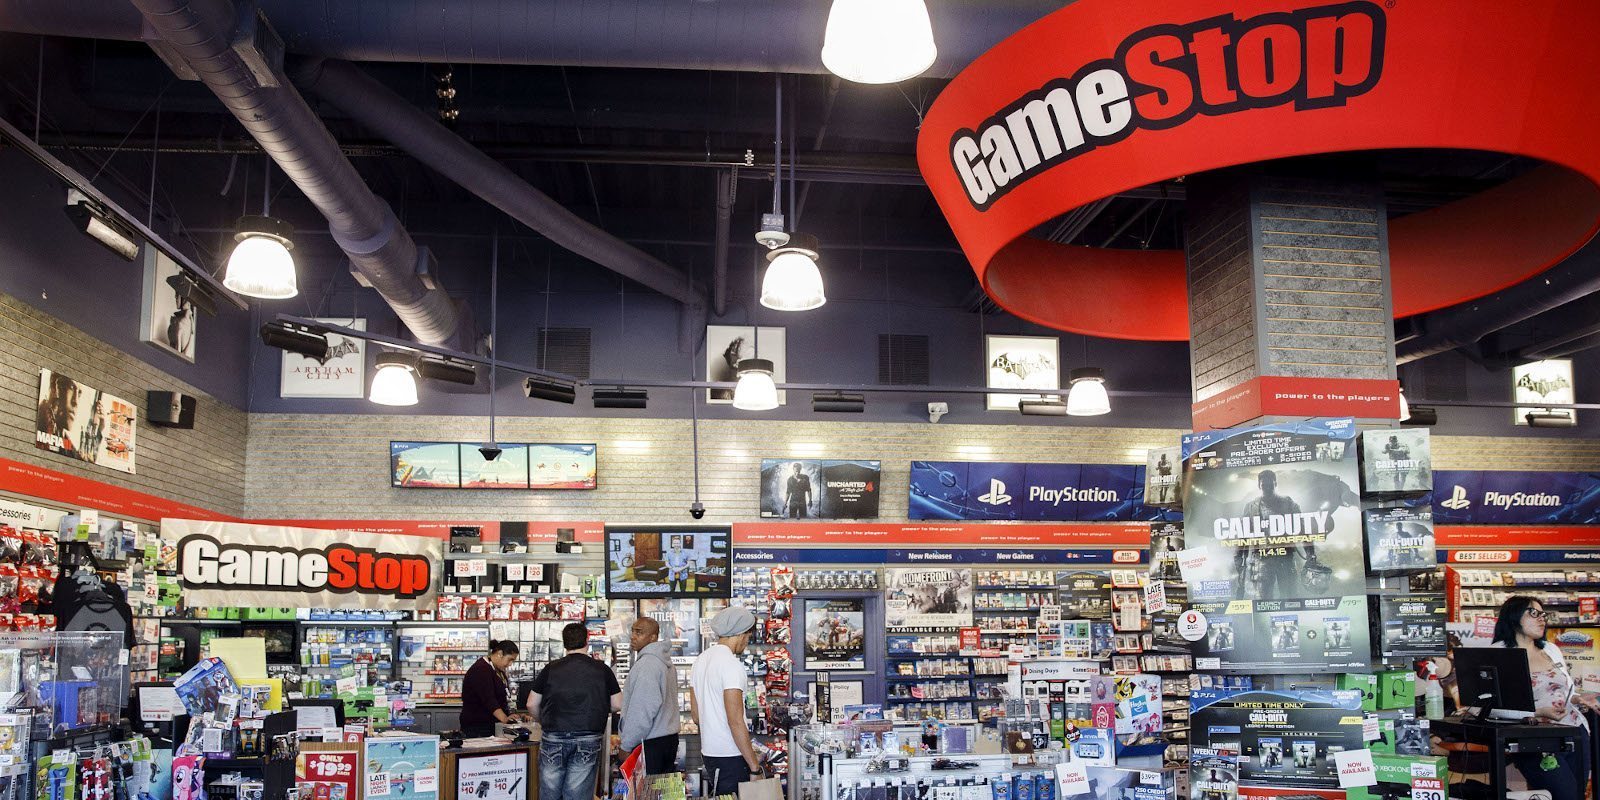 GameStop mantendrá abiertas sus tiendas de Estados Unidos porque las considera "esenciales"